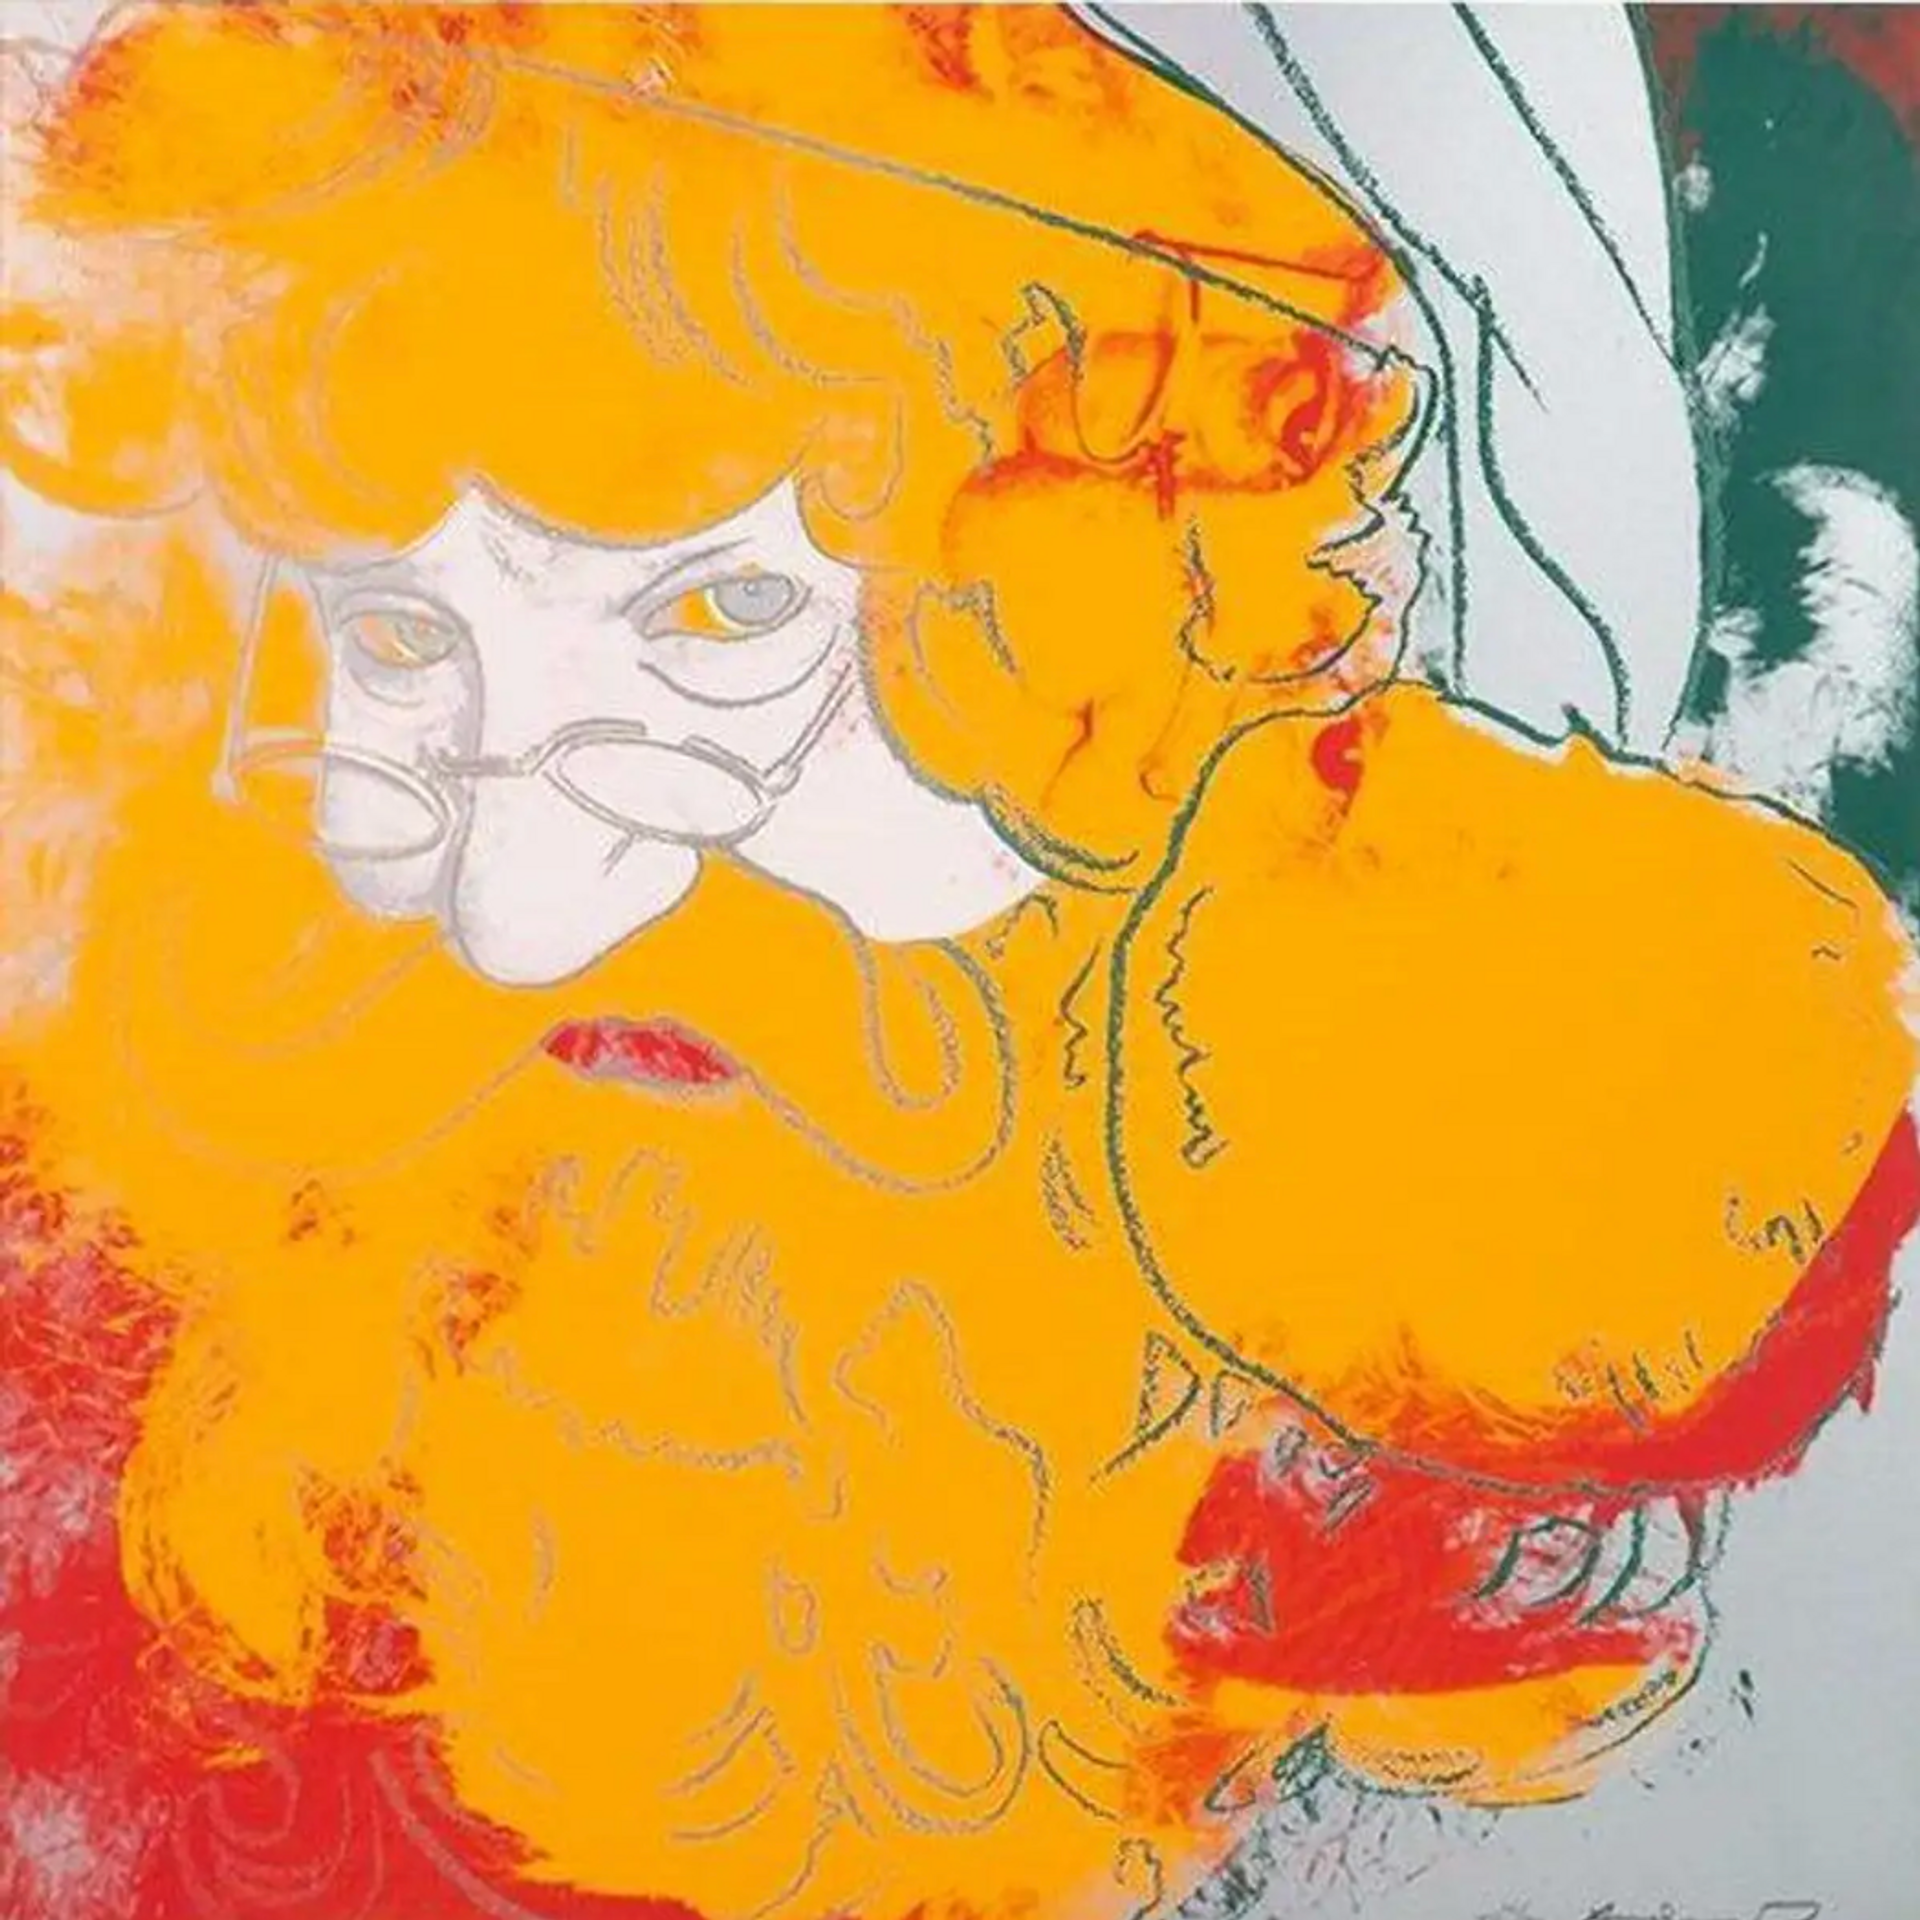 Santa Claus by Andy Warhol